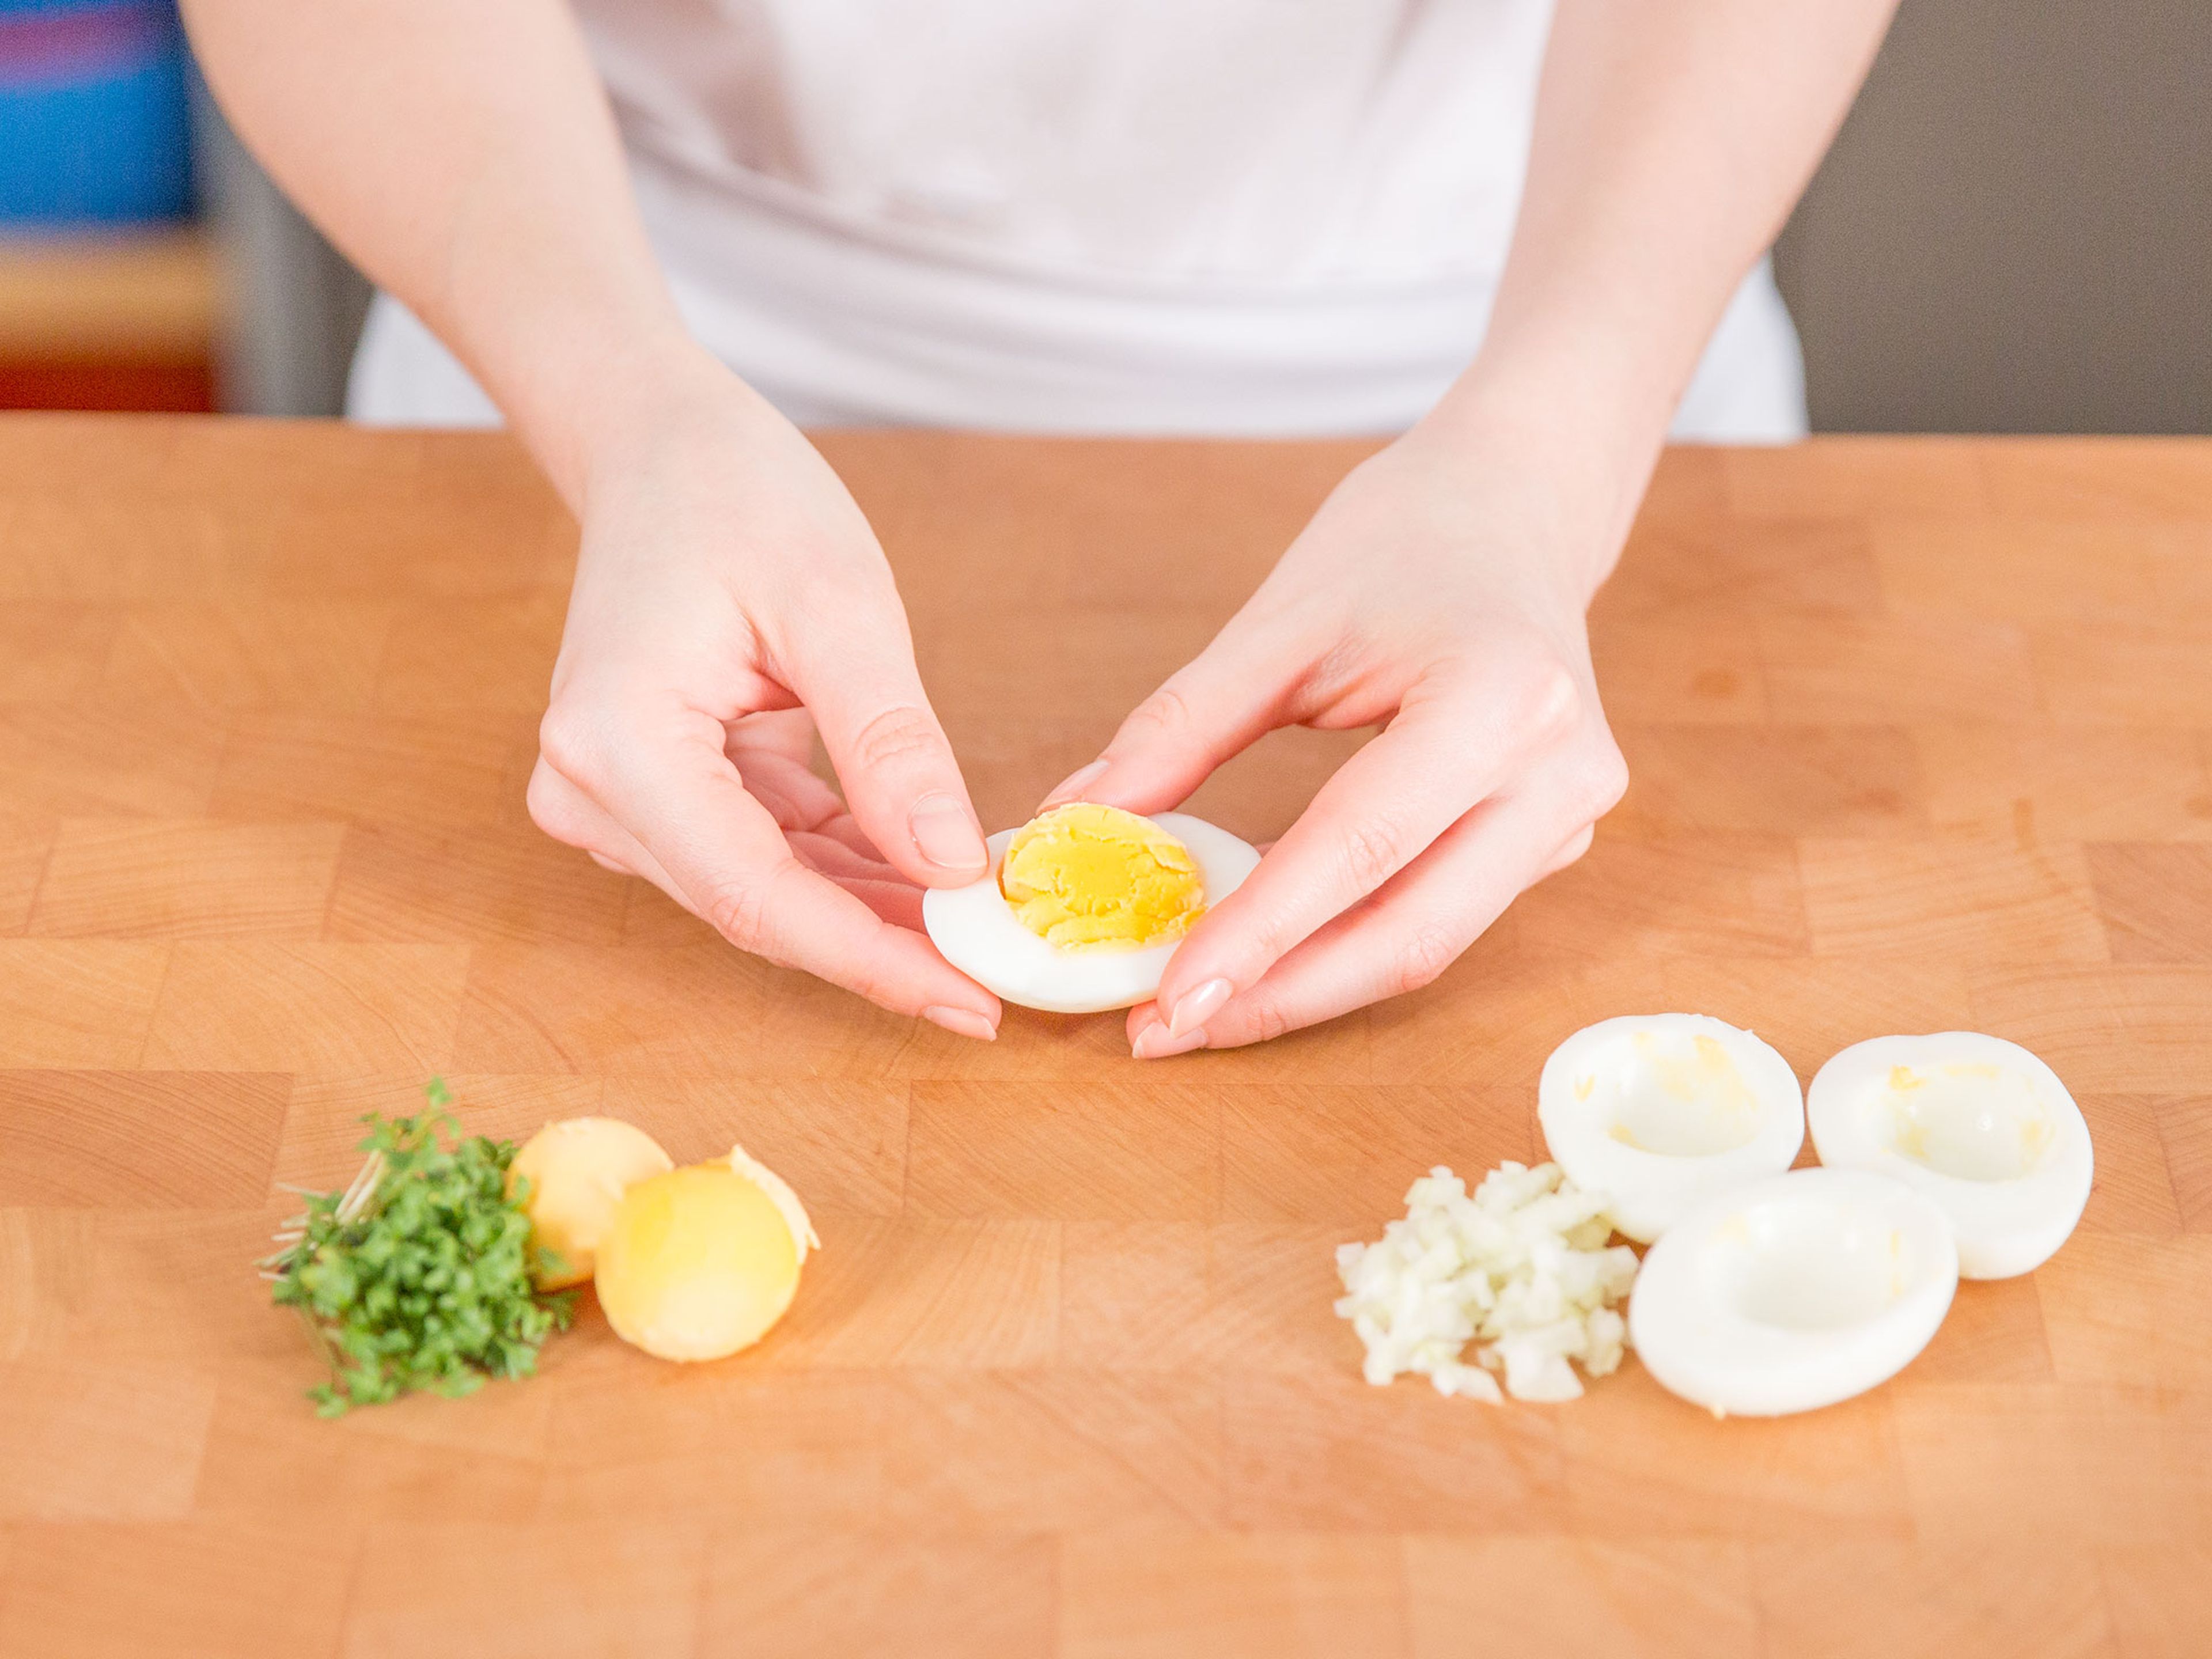 Wasser in einem kleinen Topf zum Sieden bringen. Eier für ca. 8 - 10 Min. kochen, dann mit kaltem Wasser abschrecken. Eier schälen und längs halbieren, dann von jeder Eihälfte eine kleine Scheibe unten abschneiden, damit sie nicht umfallen. Eigelbe mit einem Löffel entfernen, beiseite stellen. Zwiebel fein hacken.